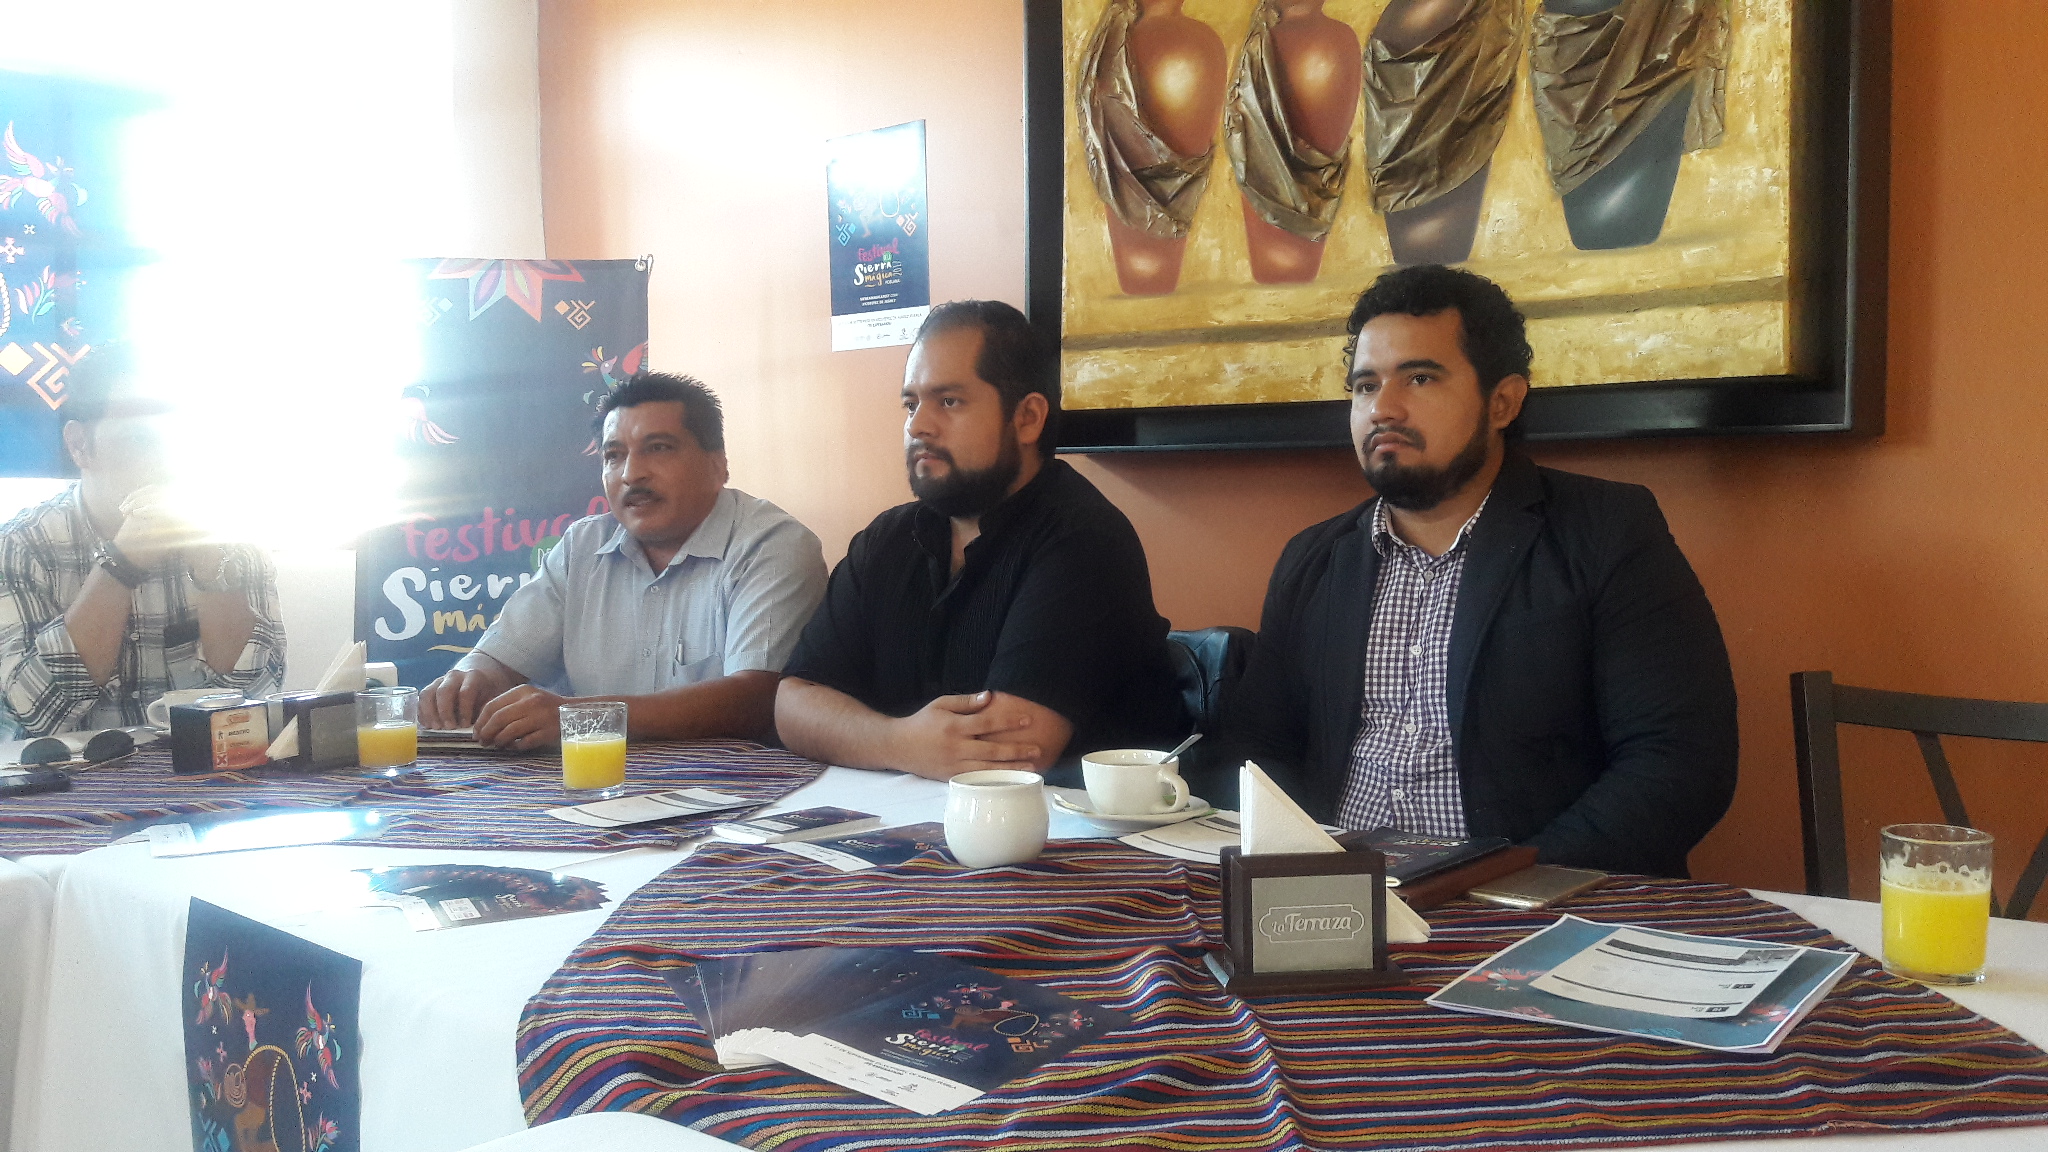 Comuna de Xicotepec niega apoyo a festival: organizadores